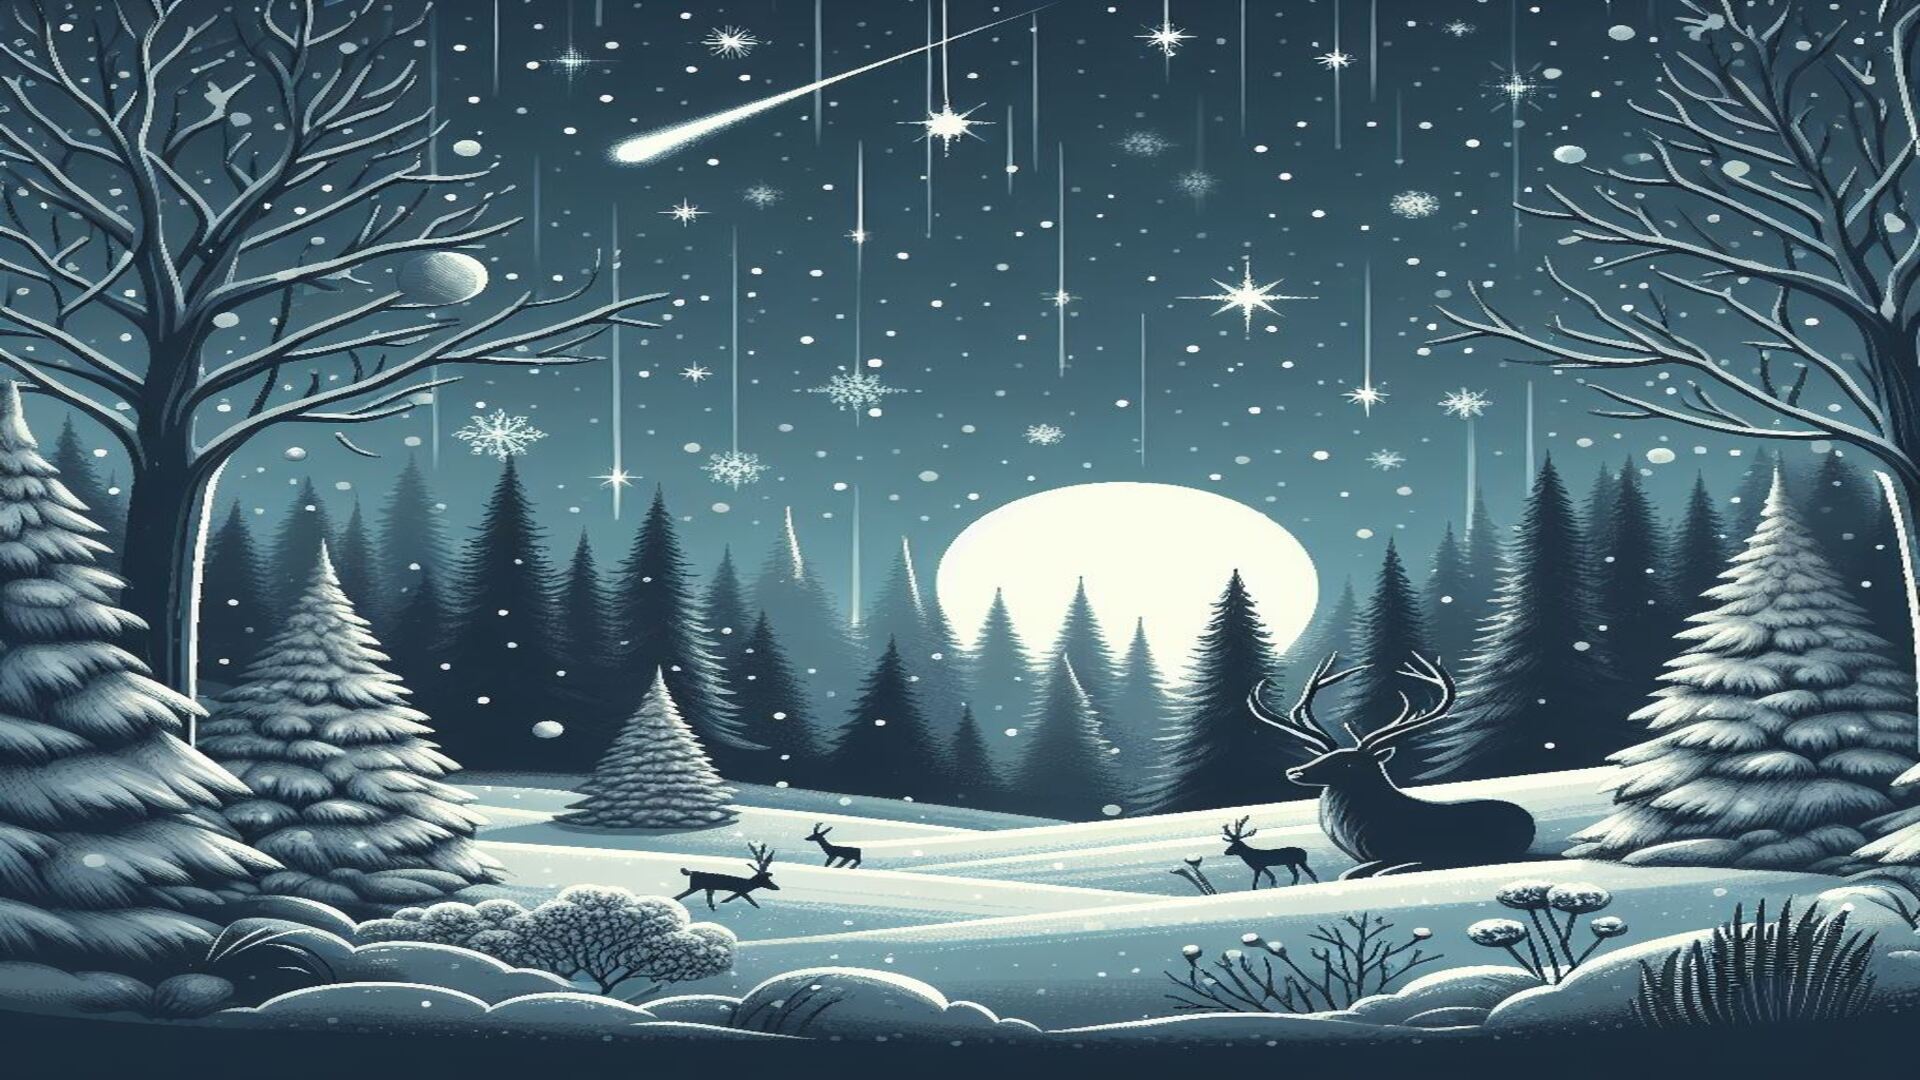 Reindeer under shooting star